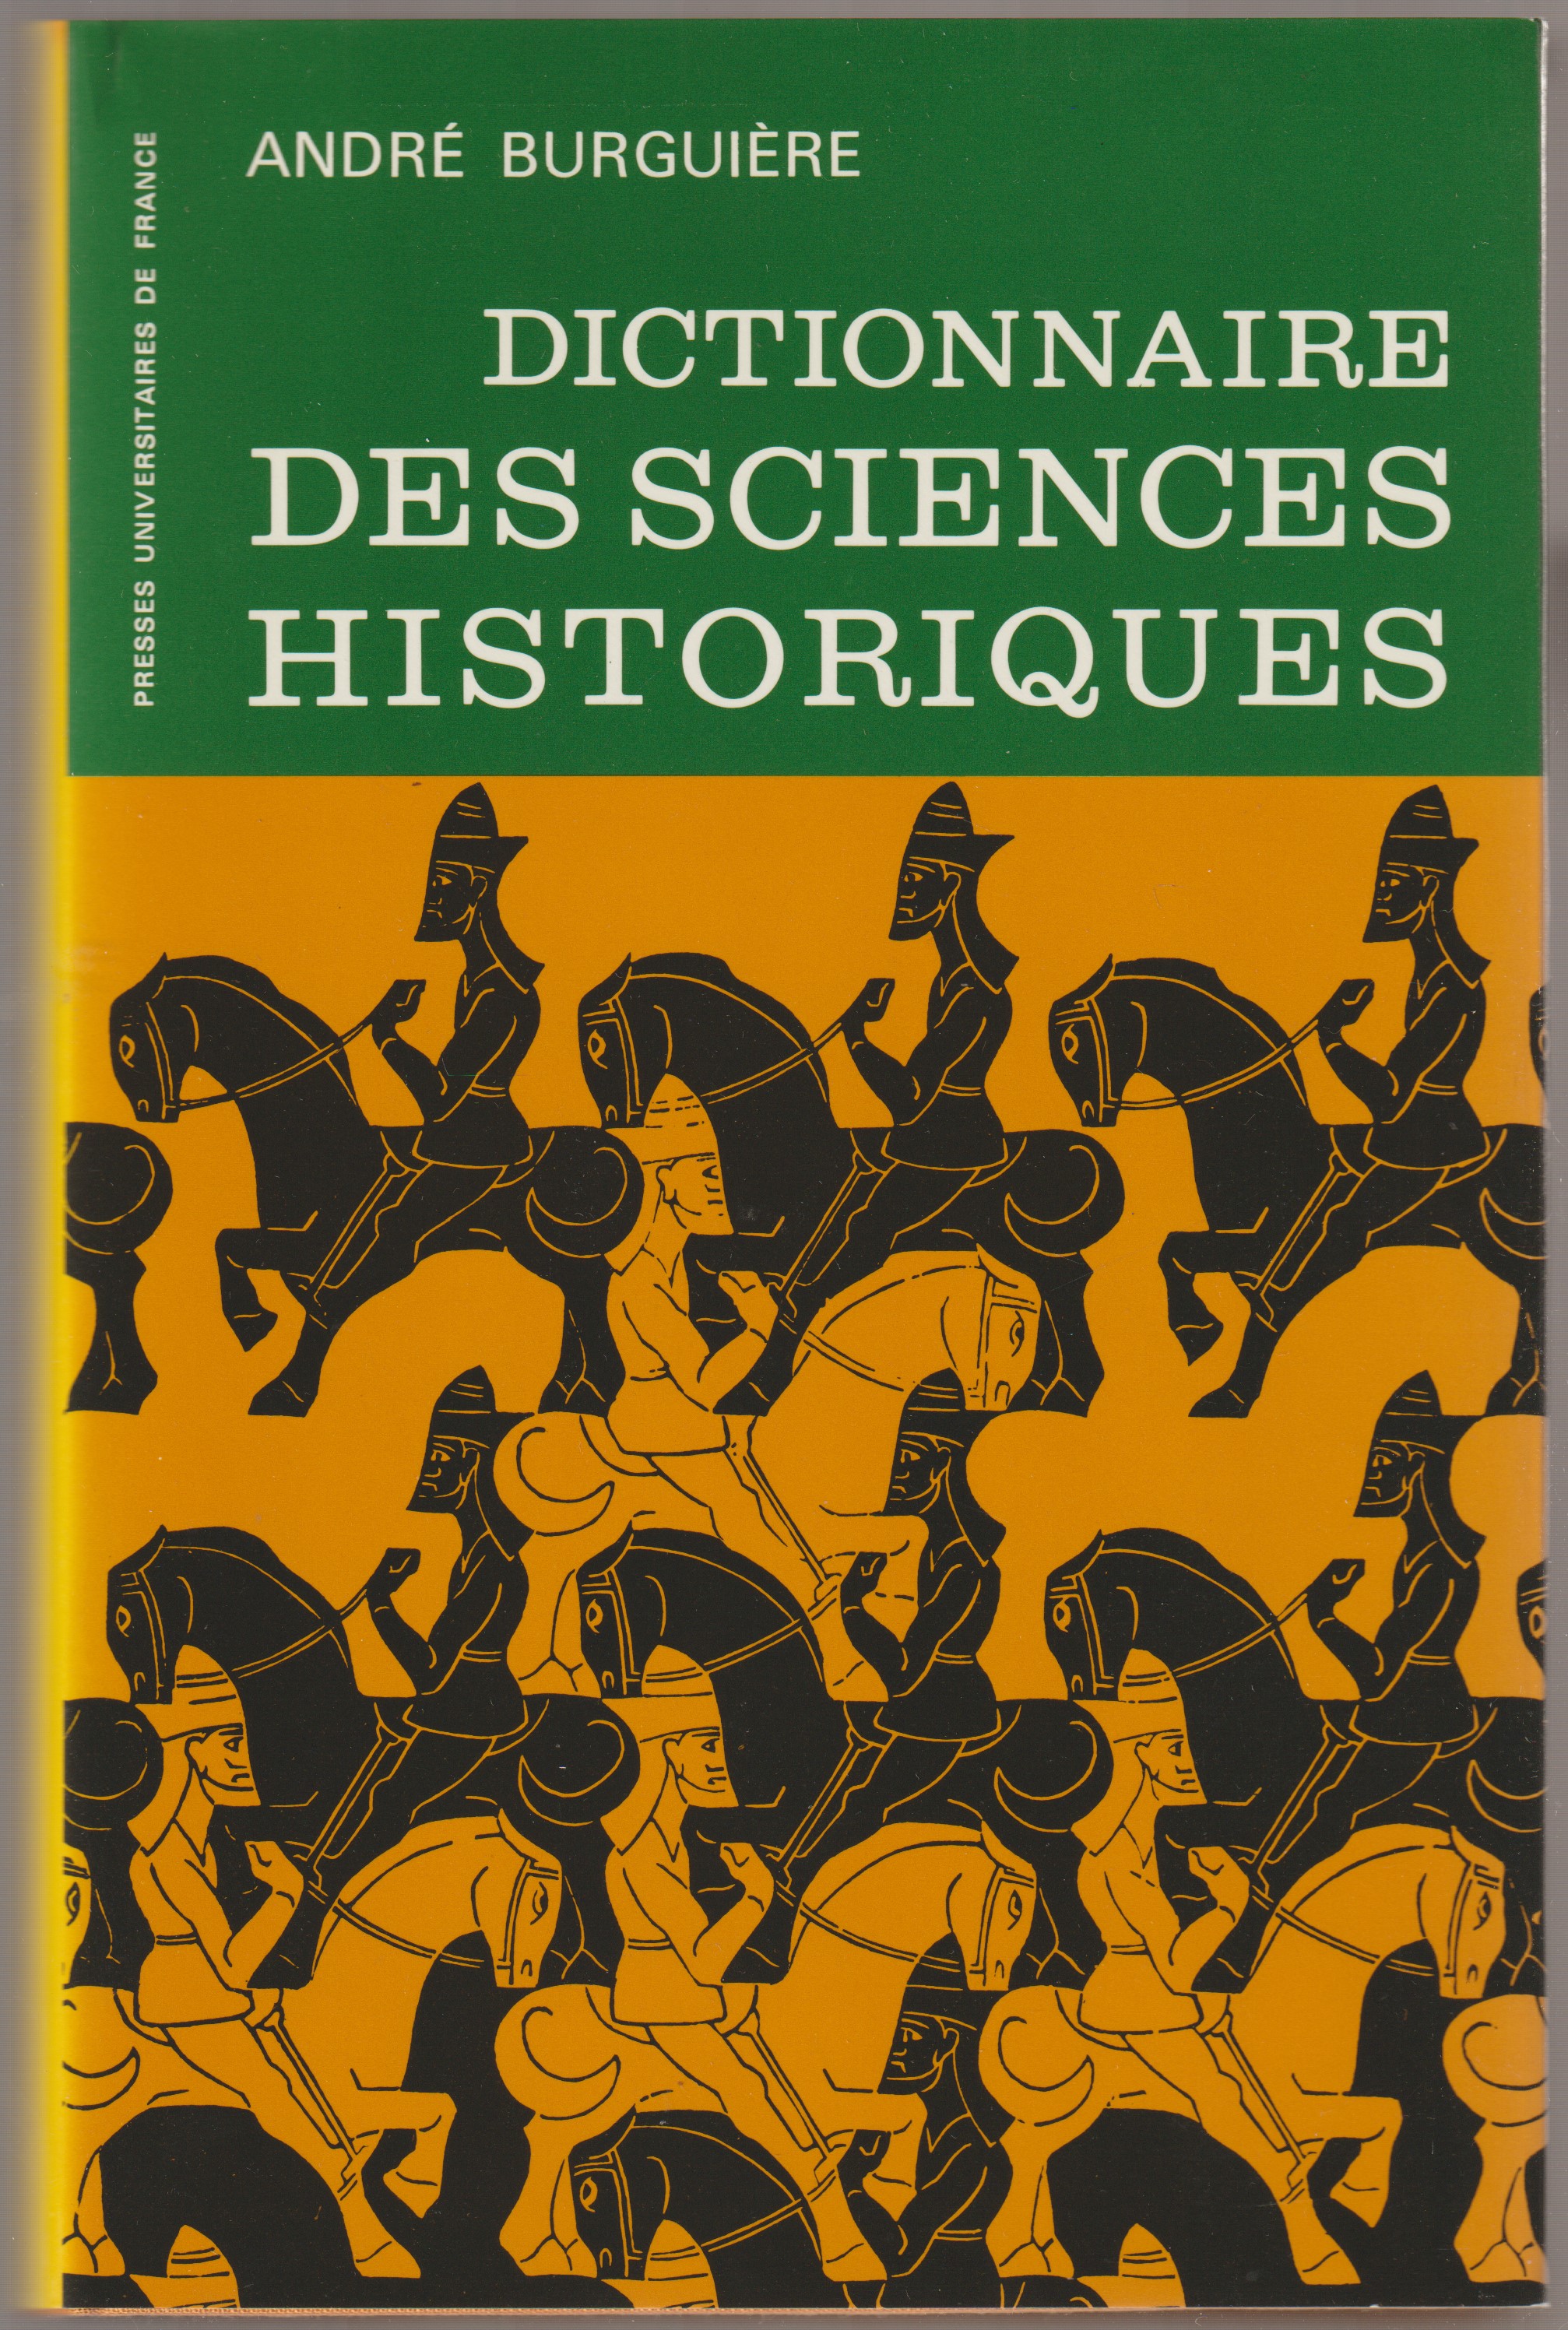 Dictionnaire des sciences historiques.